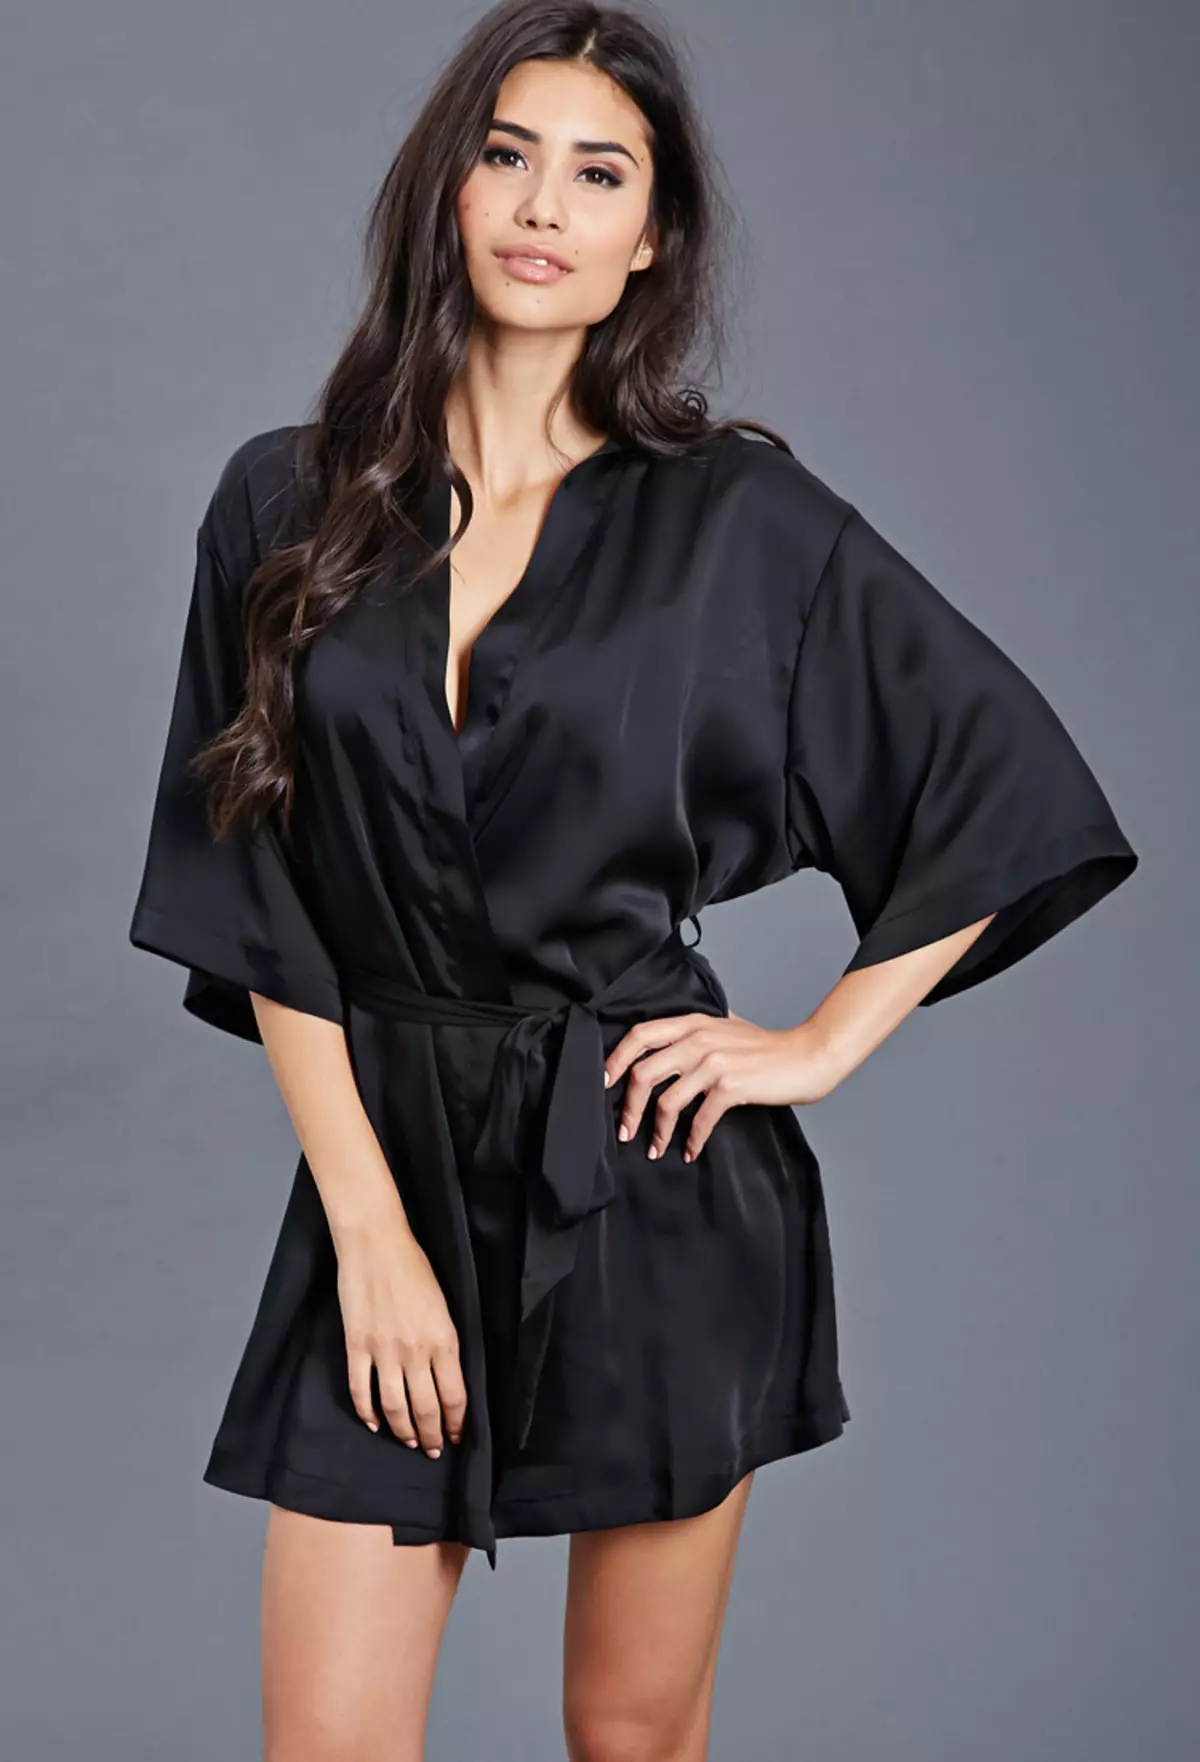 Μαύρο μετάξι Μπουρνούζι (24 φωτογραφίες): Long μοντέλα της Γυναίκας και δαντέλα 1588_23